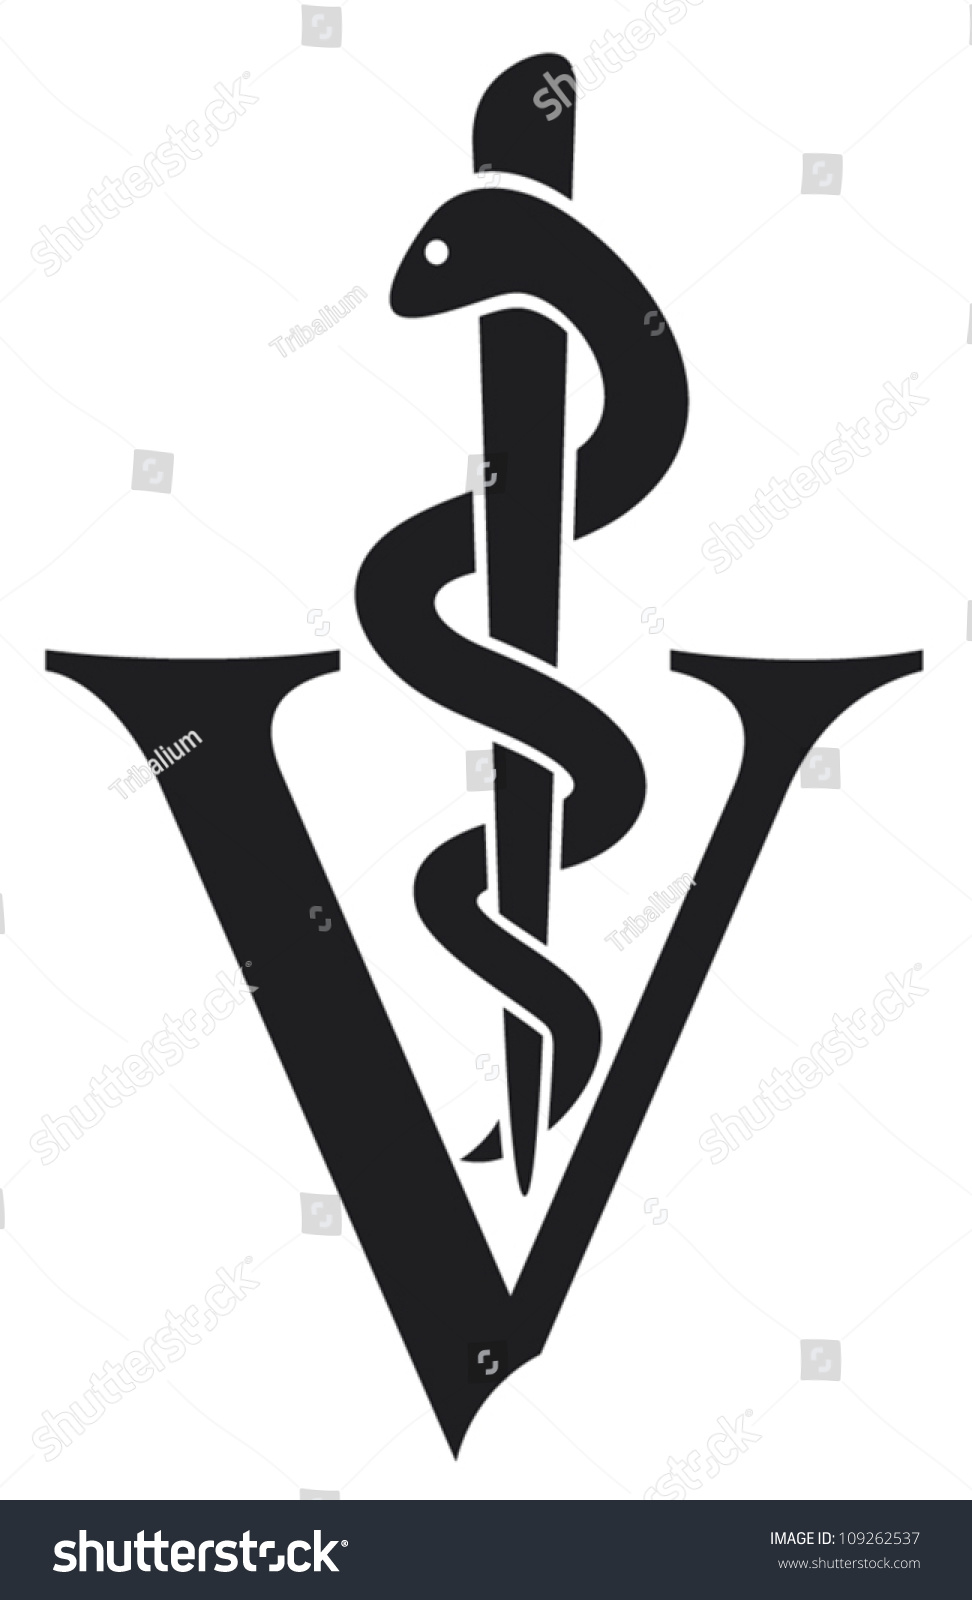 free veterinary logo clipart - photo #37